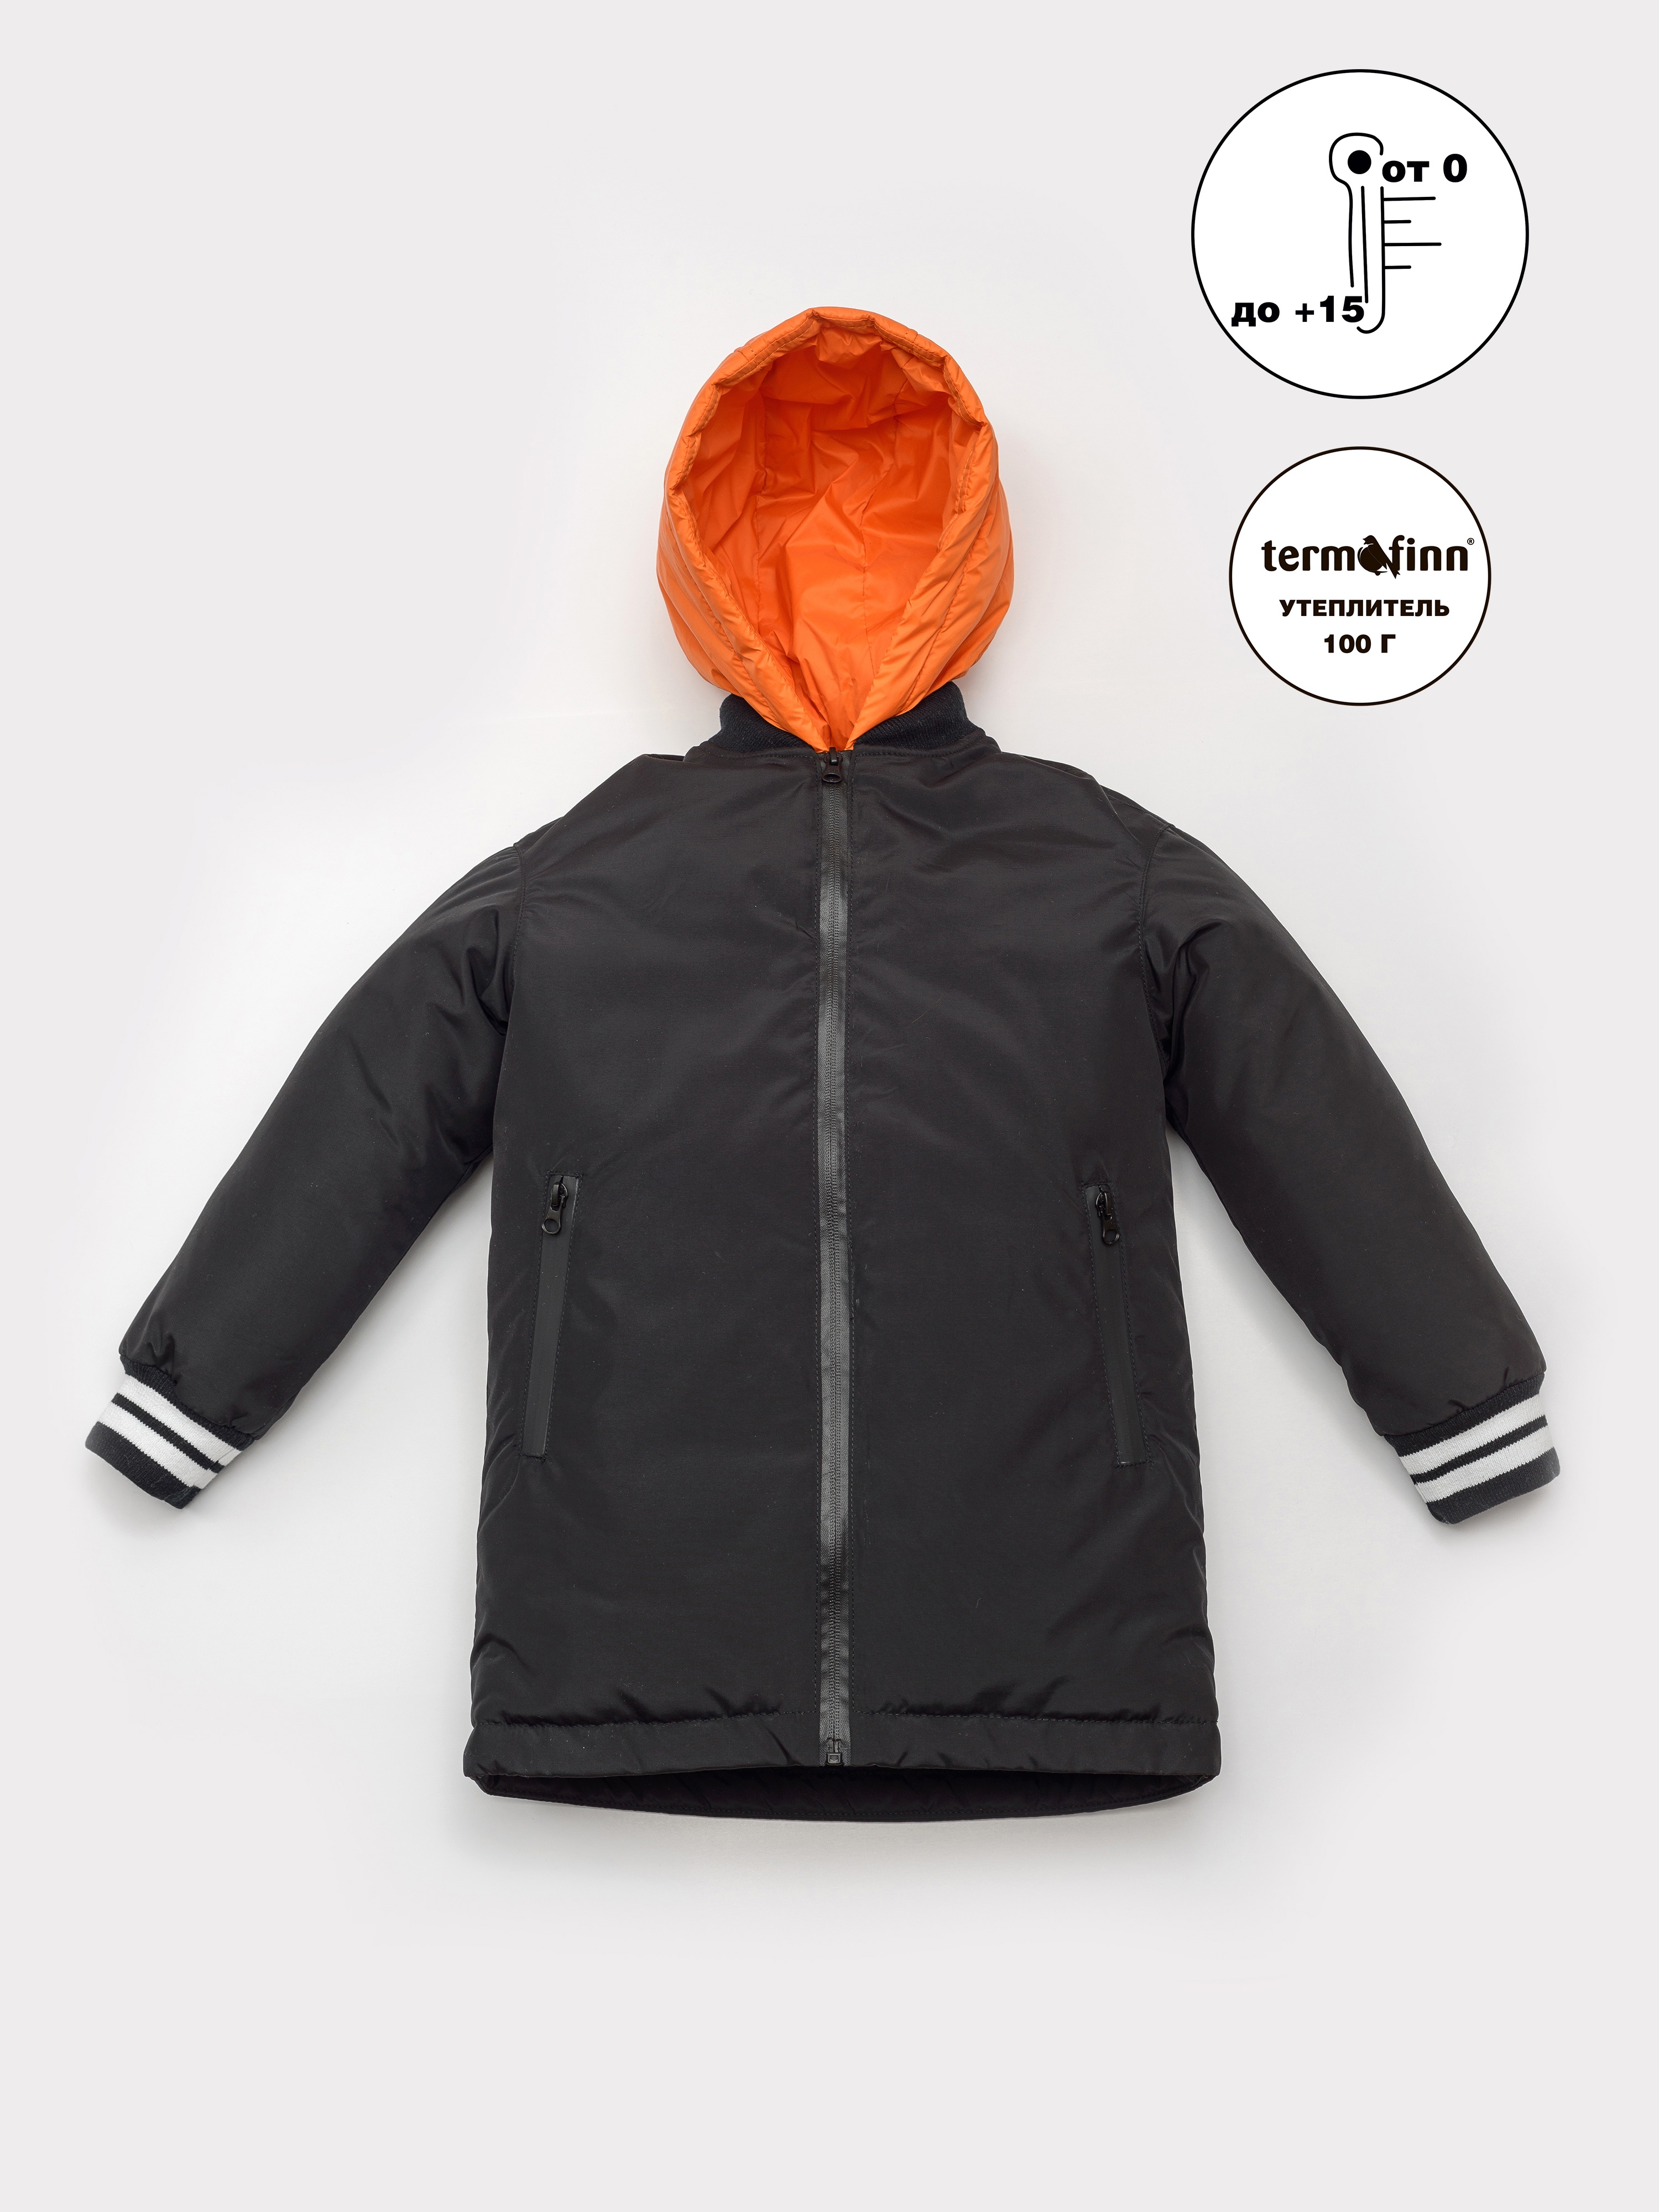 Куртка детская Orso Bianco Блек, черный, оранжевый, 146